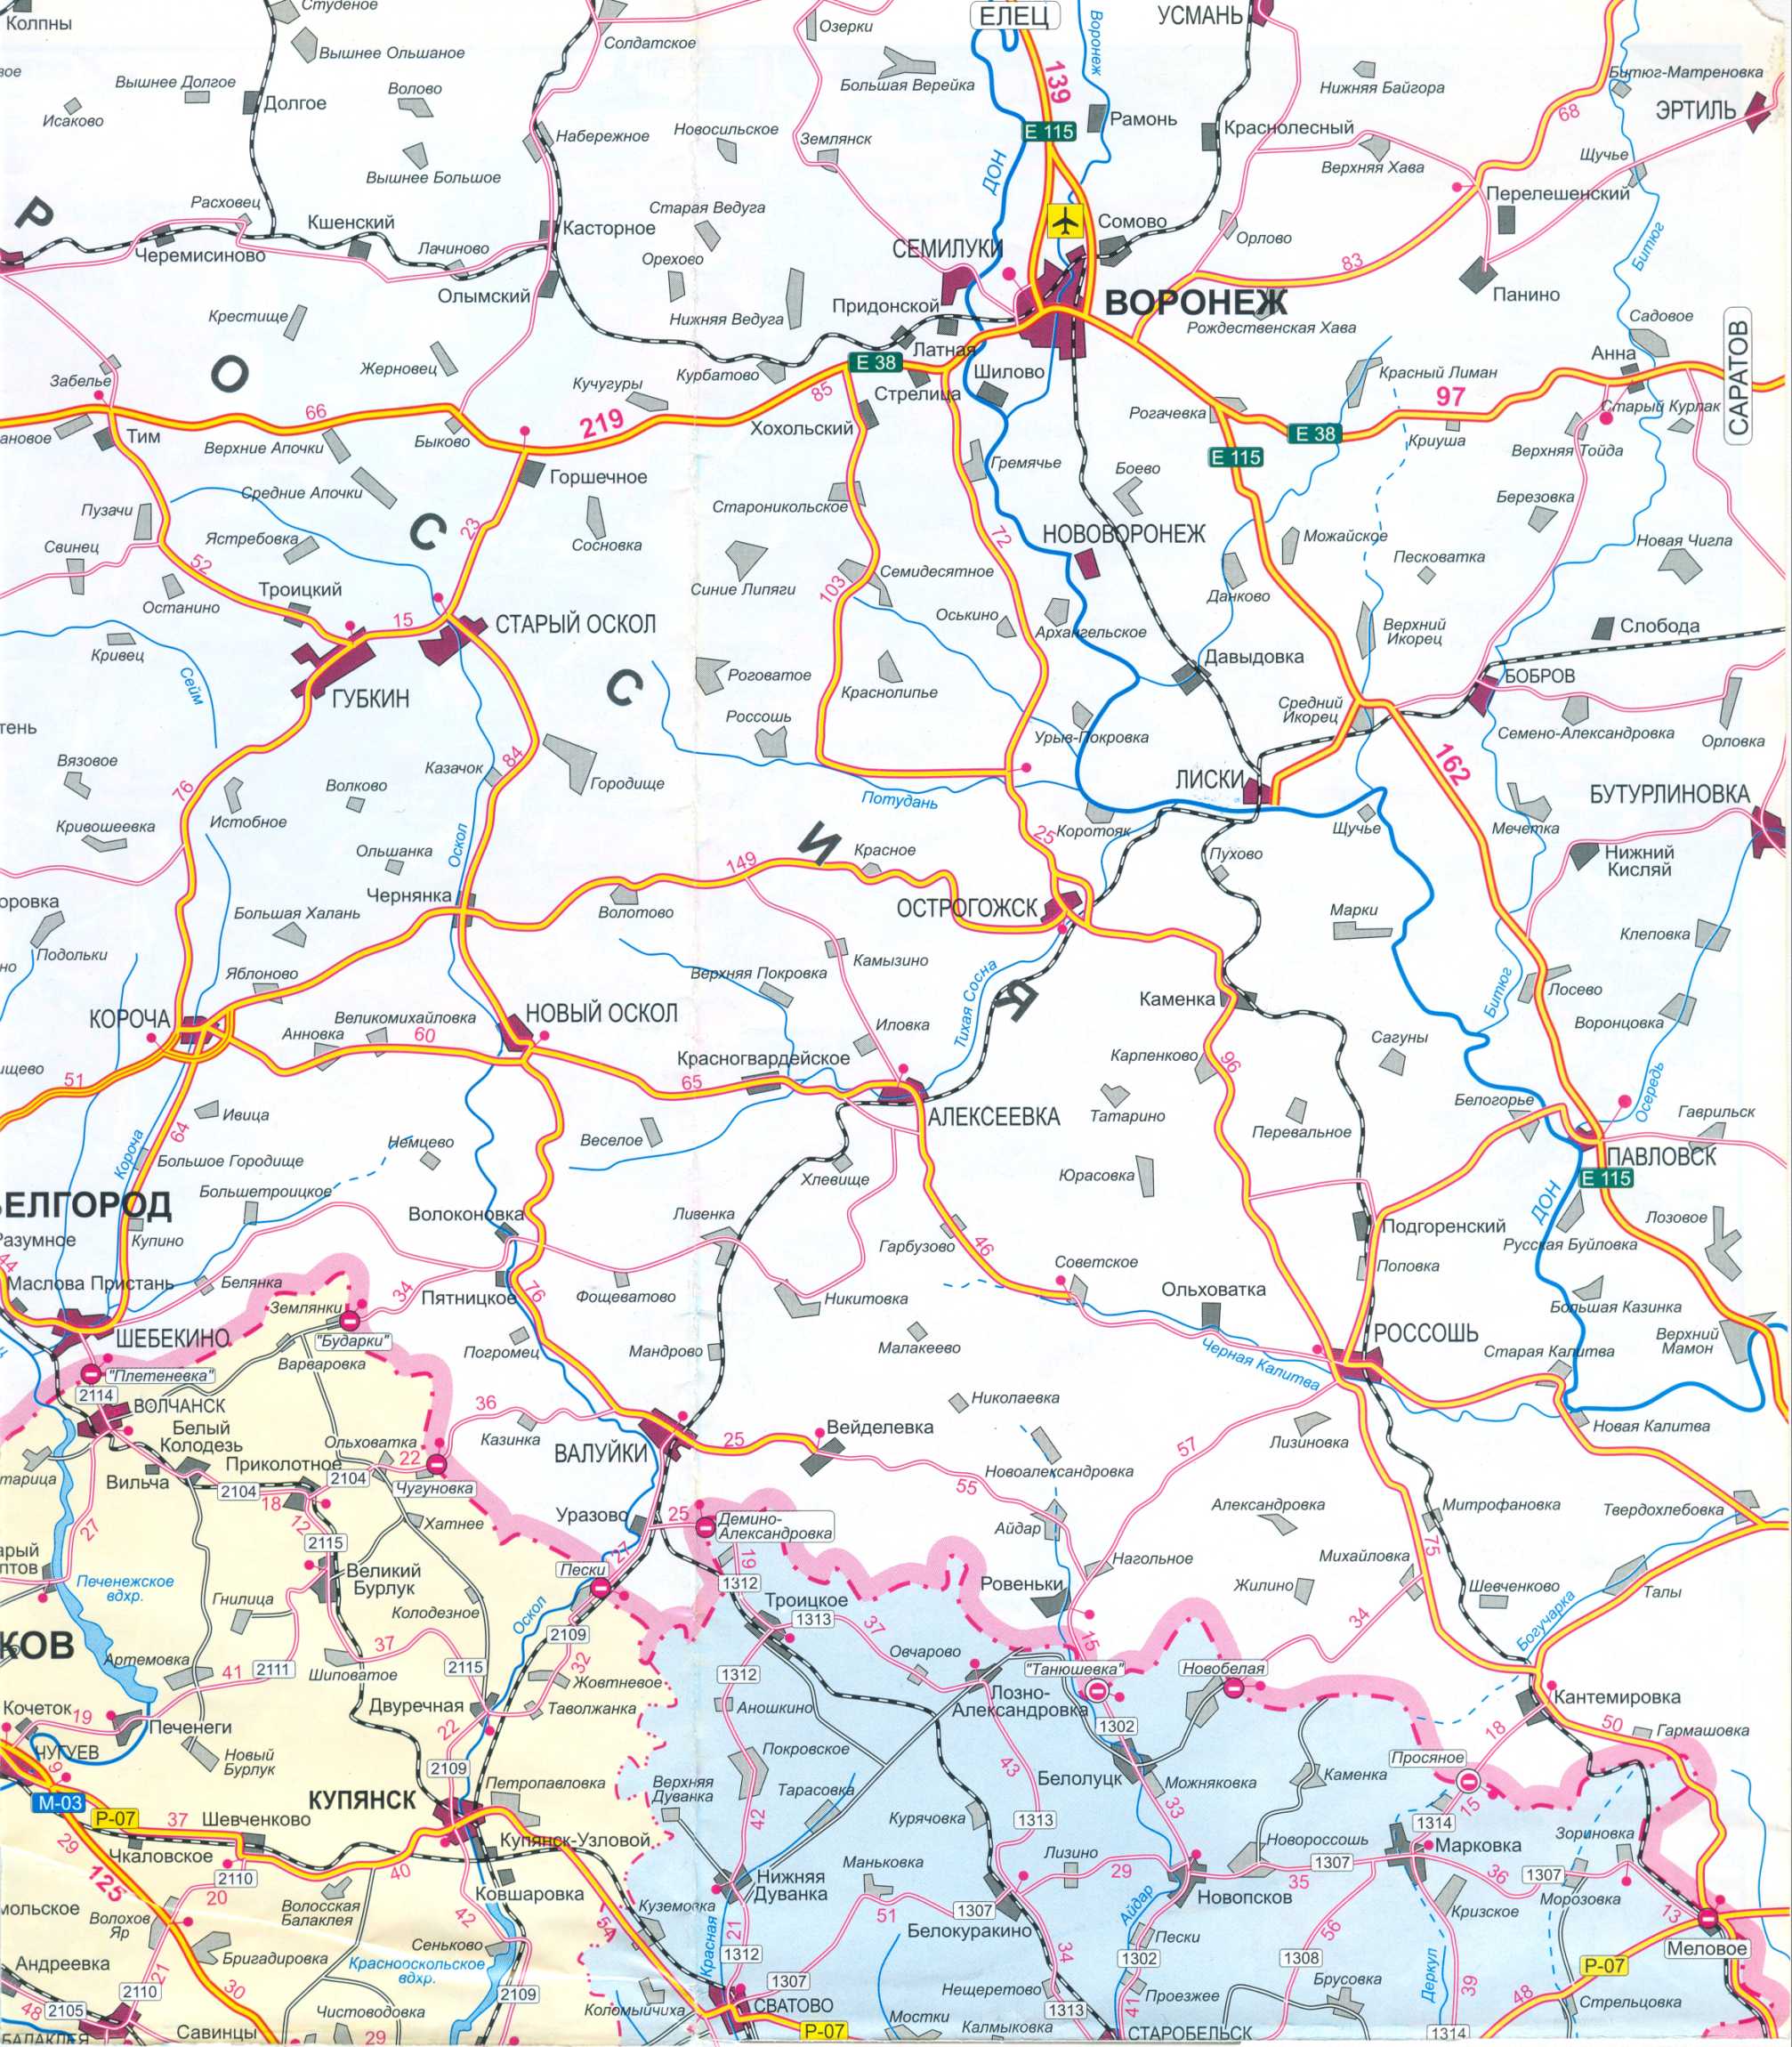 Карта Украины бесплатно. Карта дорог Украины скачать бесплатно. Большая карта дорог Украины бесплатно, E0